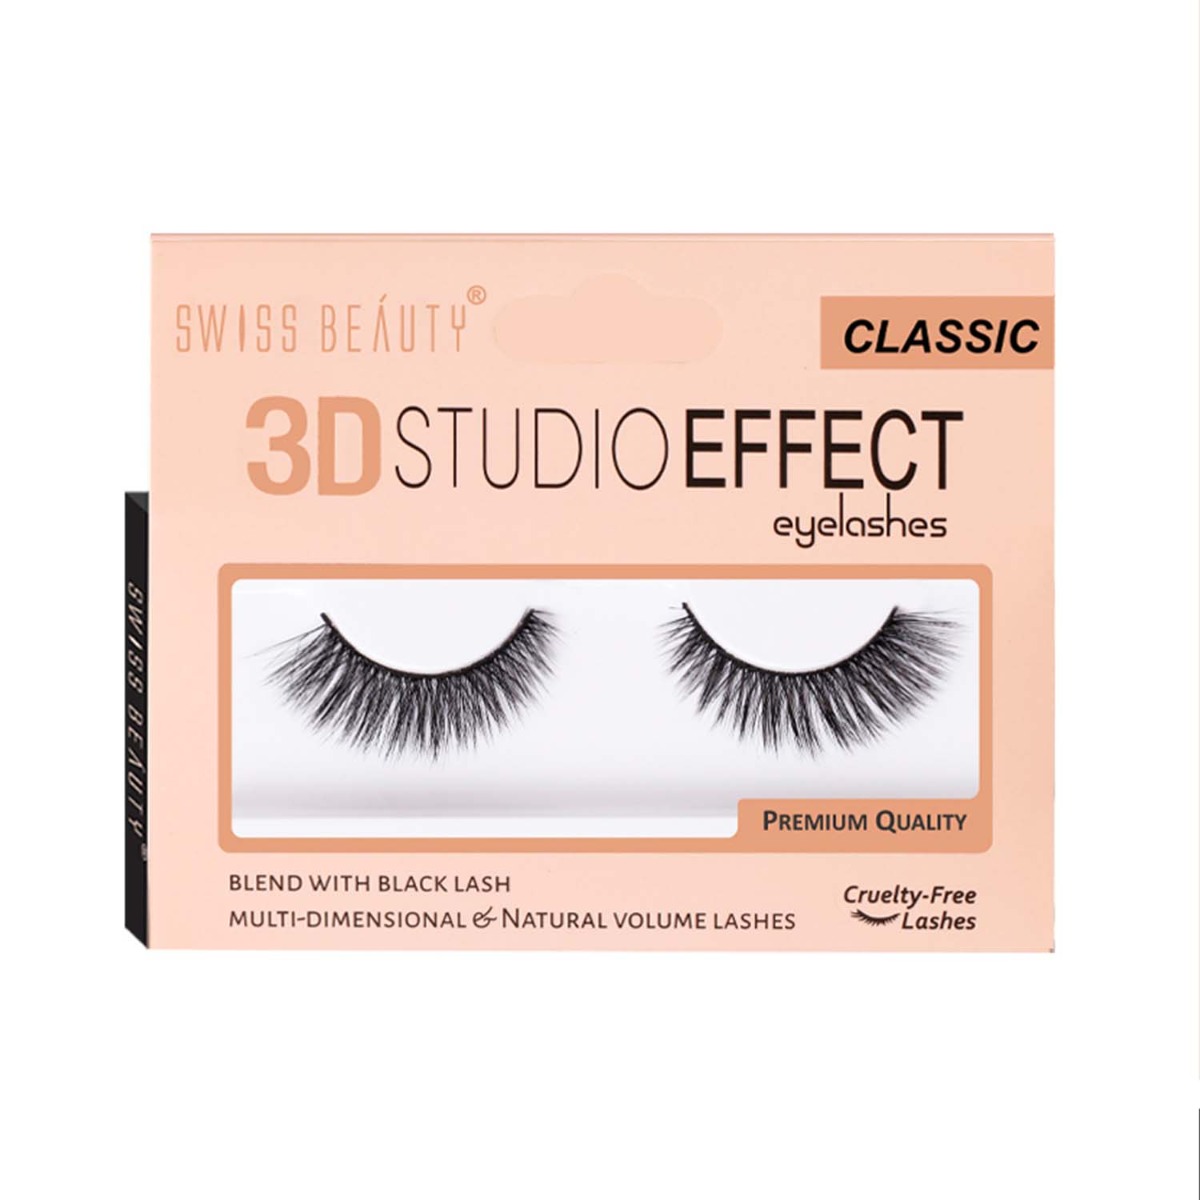 Swiss Beauty 3d Studio Effect Eyelashes - Classic, 100gm